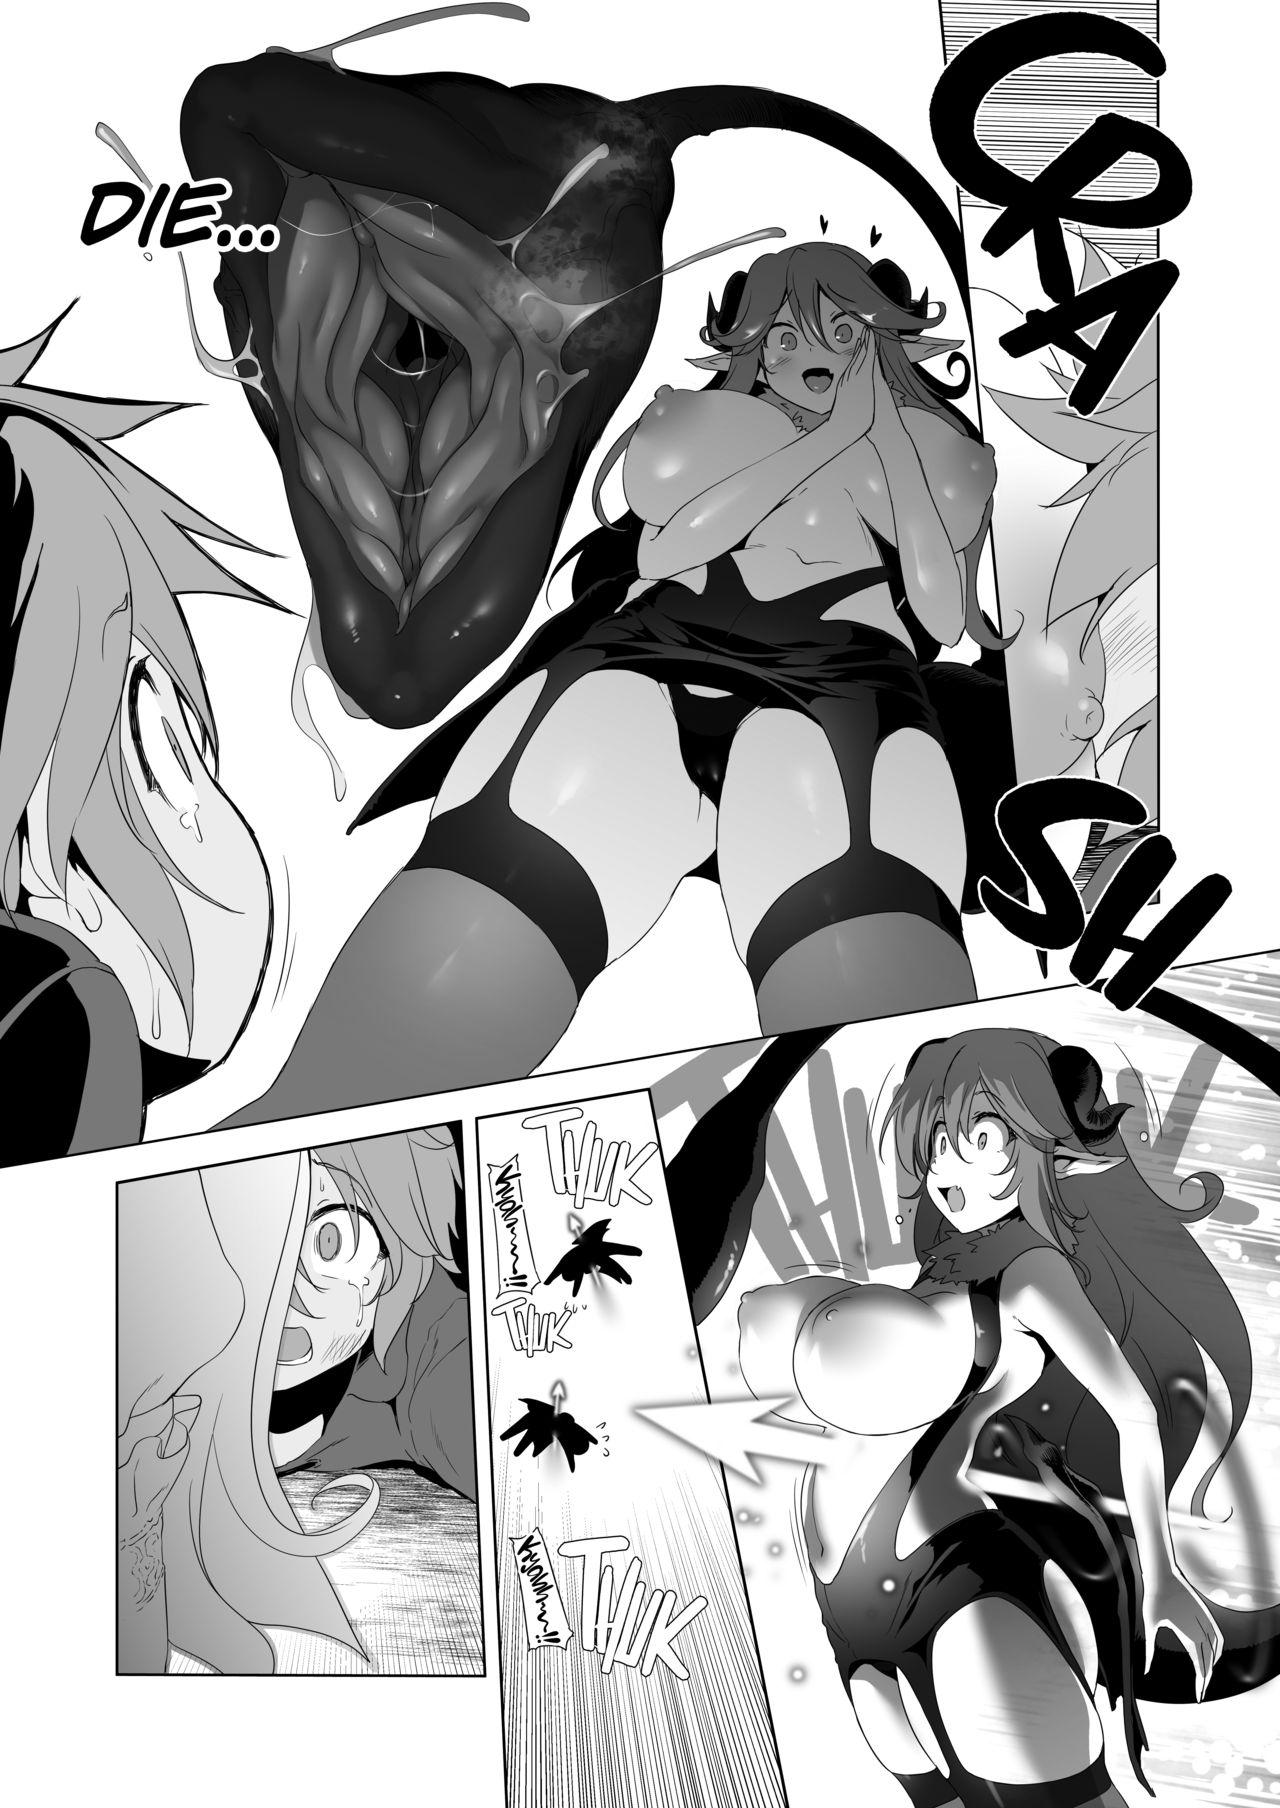 Prostitute Makotoni Zannen desu ga Bouken no Sho 7 wa Kiete Shimaimashita. - Original With - Page 2